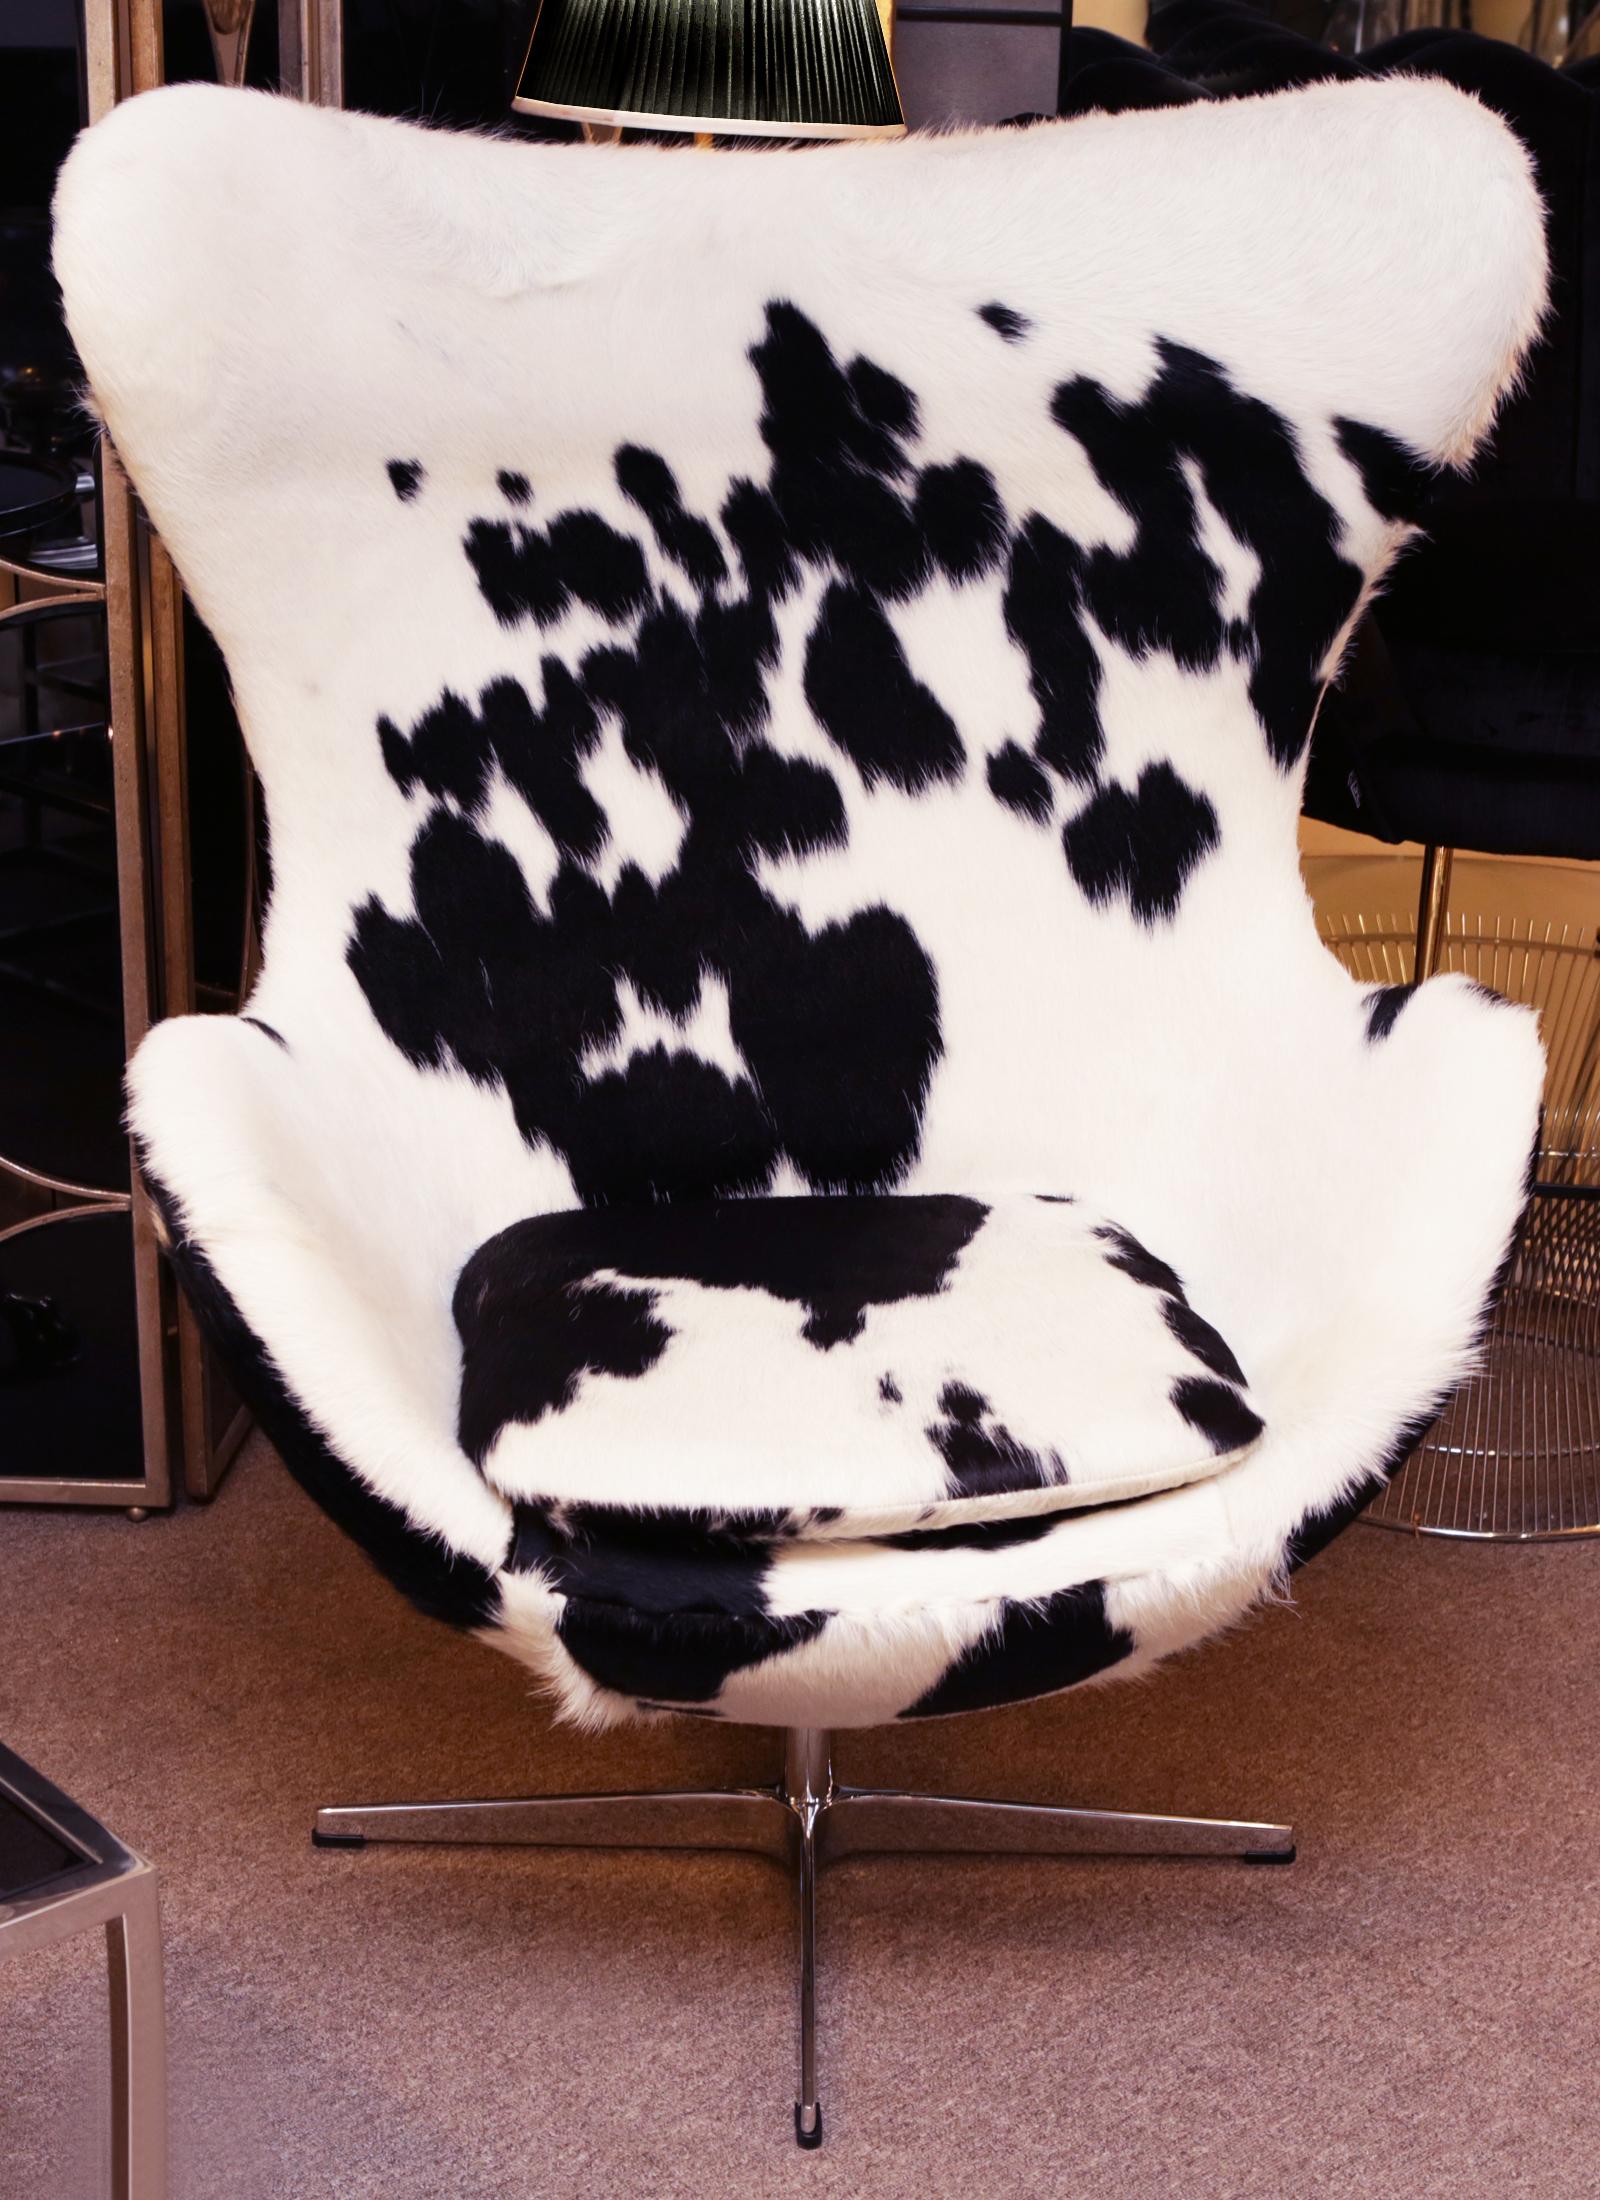 Sessel Pony schwarz und weiß Ei,
mit behandeltem Naturpony bedeckt,
auf drehbaren Füßen aus poliertem Edelstahl.
Außergewöhnliches Stück.